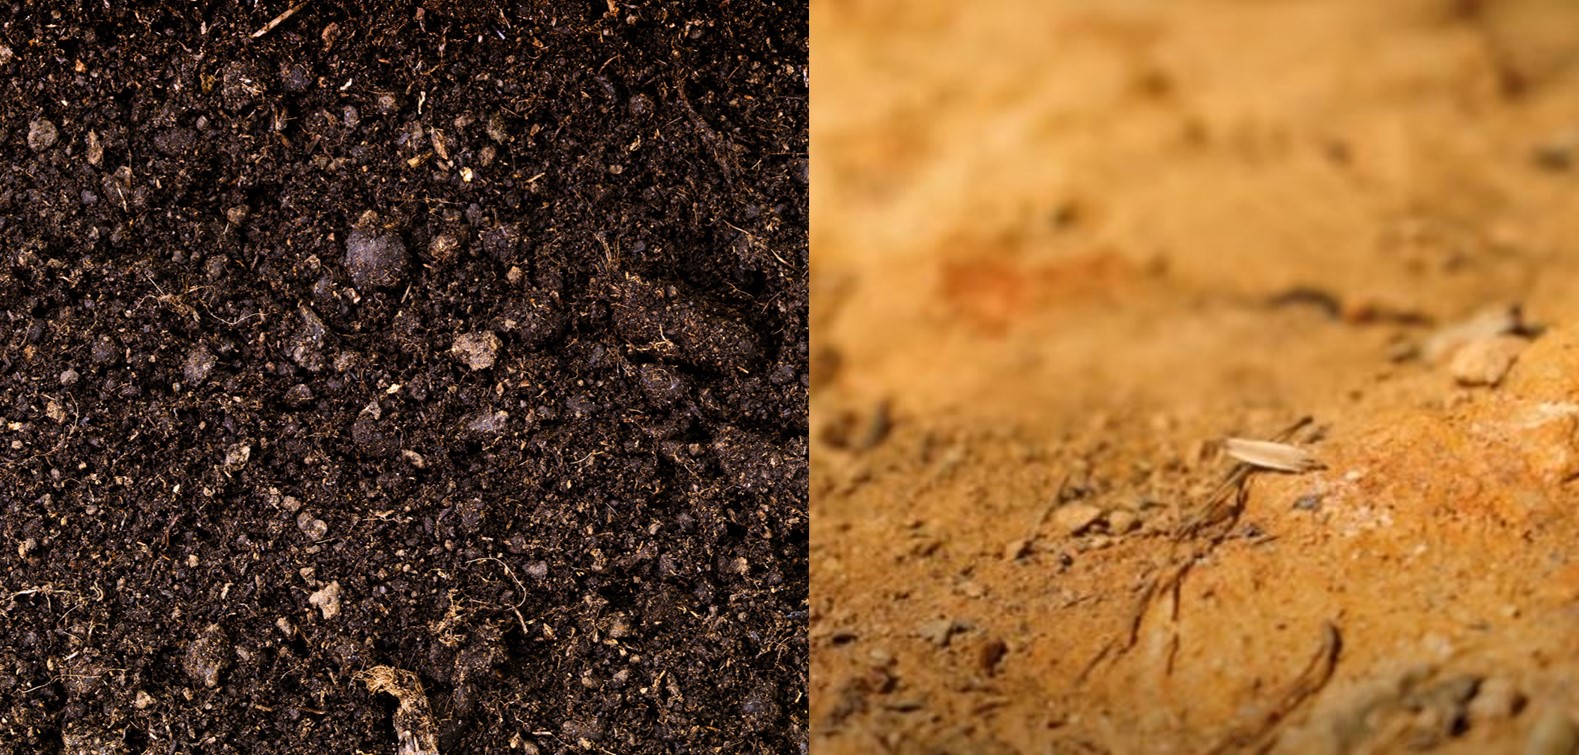 Soil vs Dirt